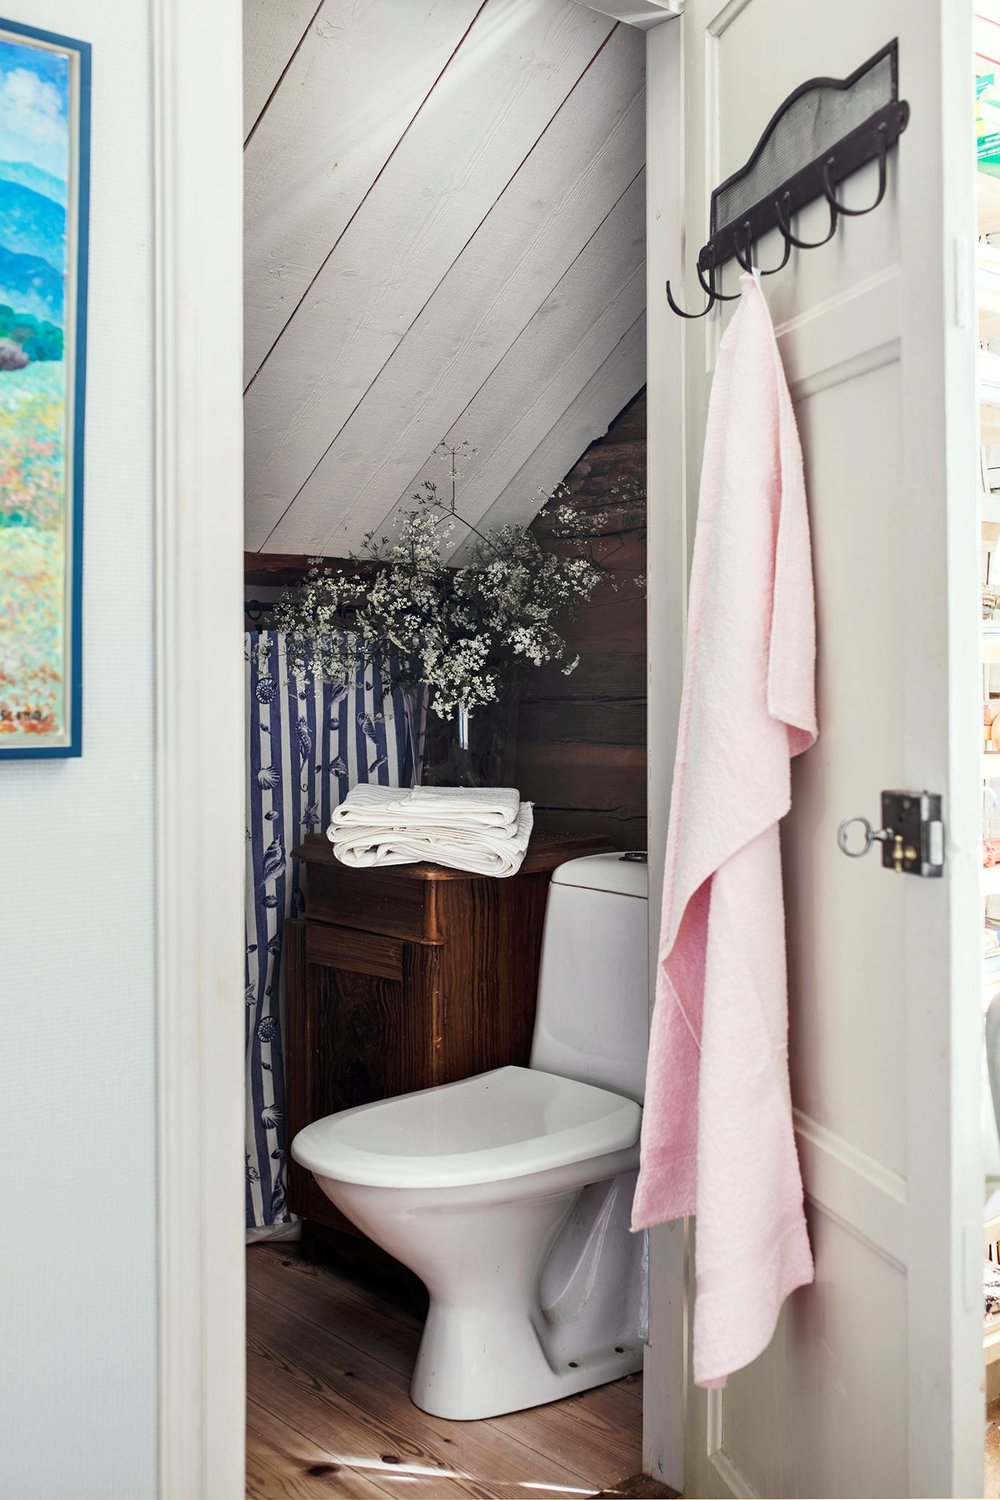 tipica casa svedese - bagno in sottotetto.jpg